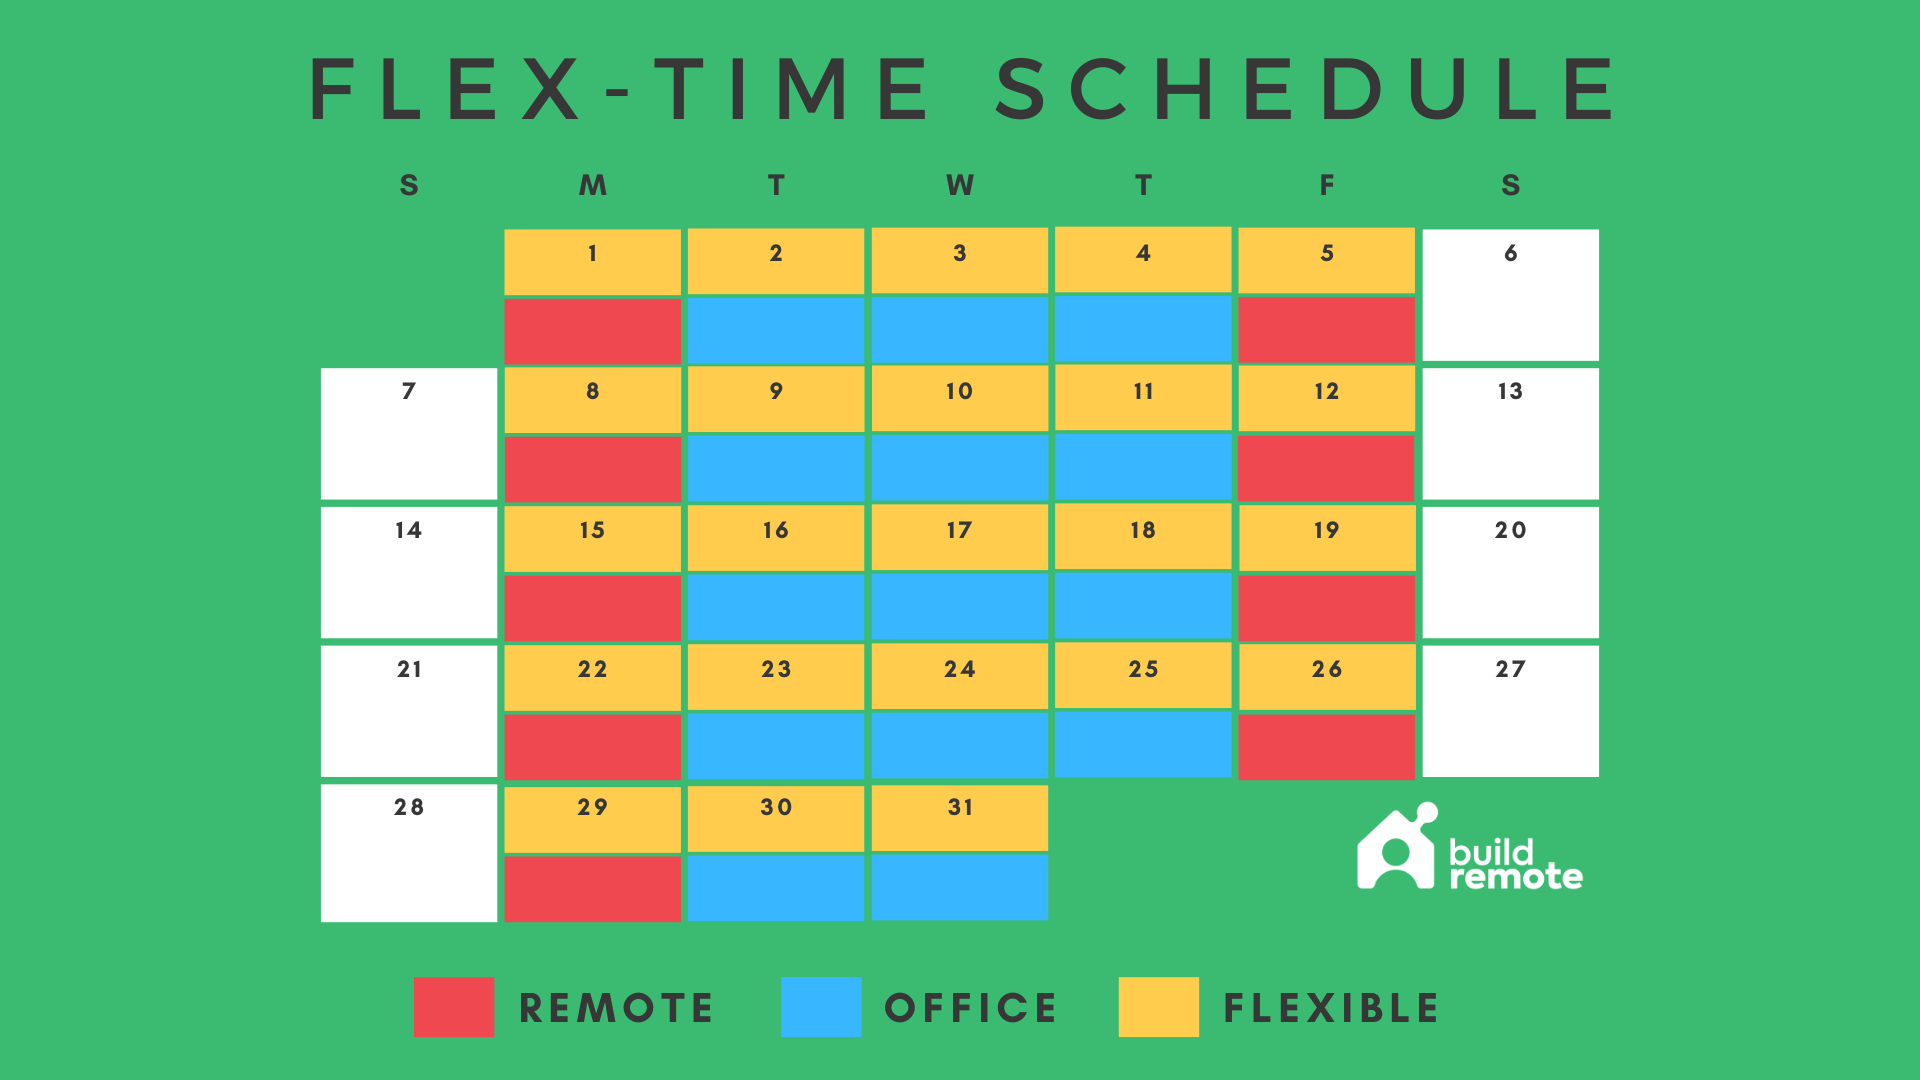 flex-time hybrid work schedule